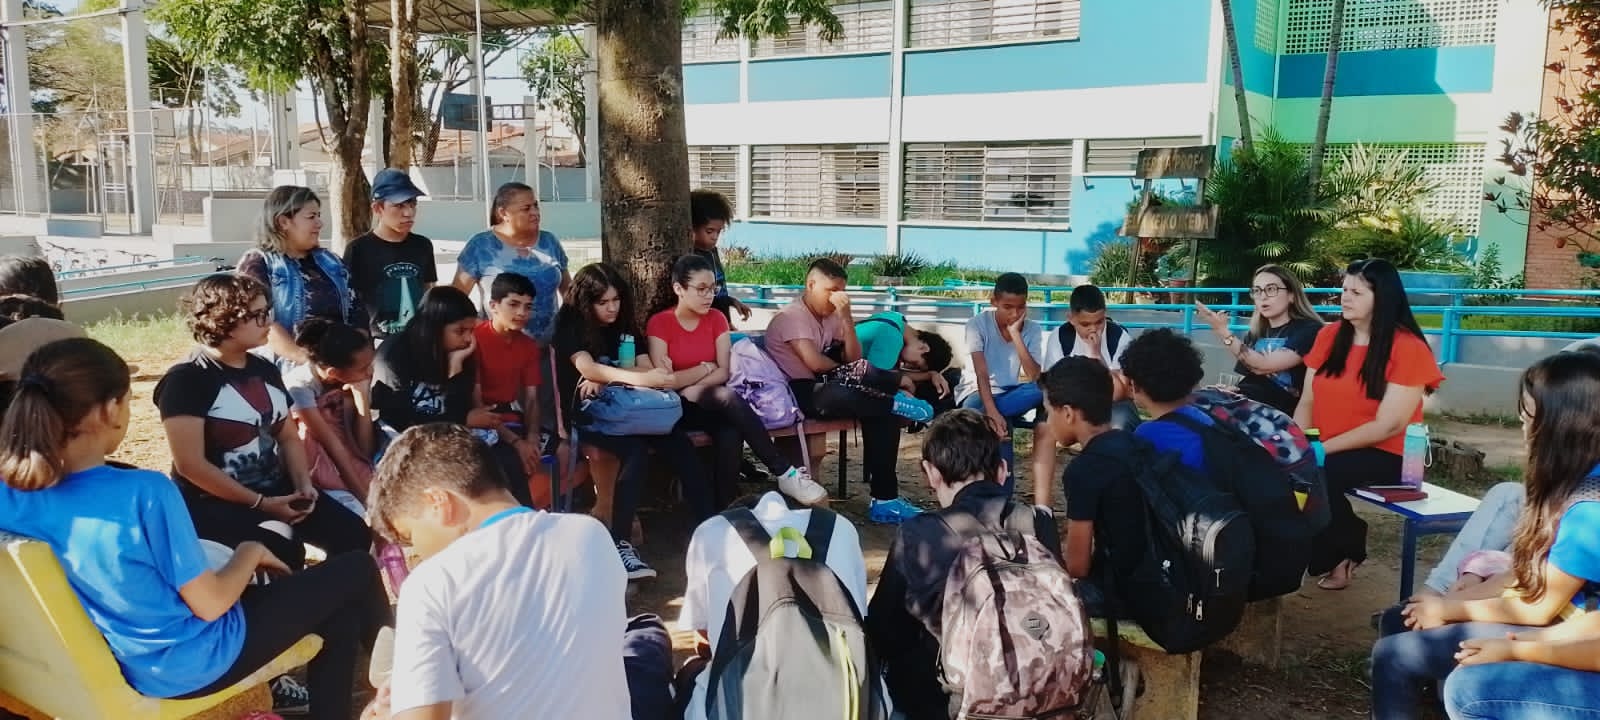 15/09 - Pinda promove roda de conversa para adolescentes em prol da campanha “Setembro Amarelo”